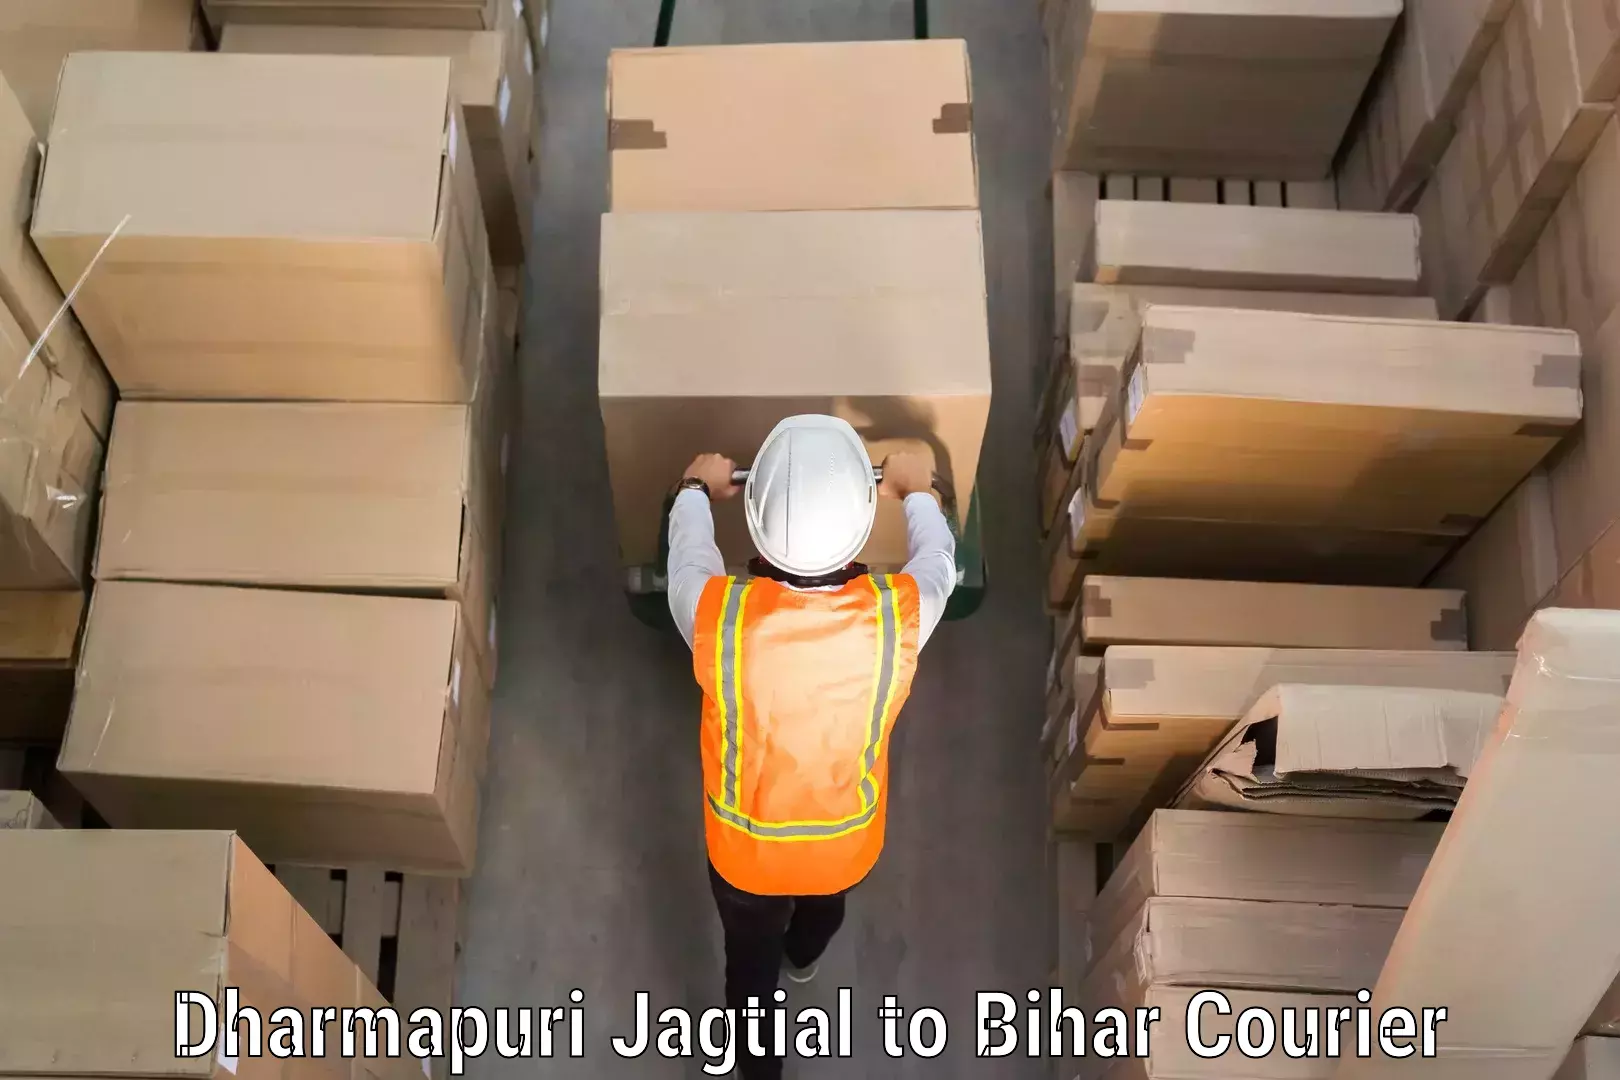 Luggage delivery system Dharmapuri Jagtial to Marhowrah